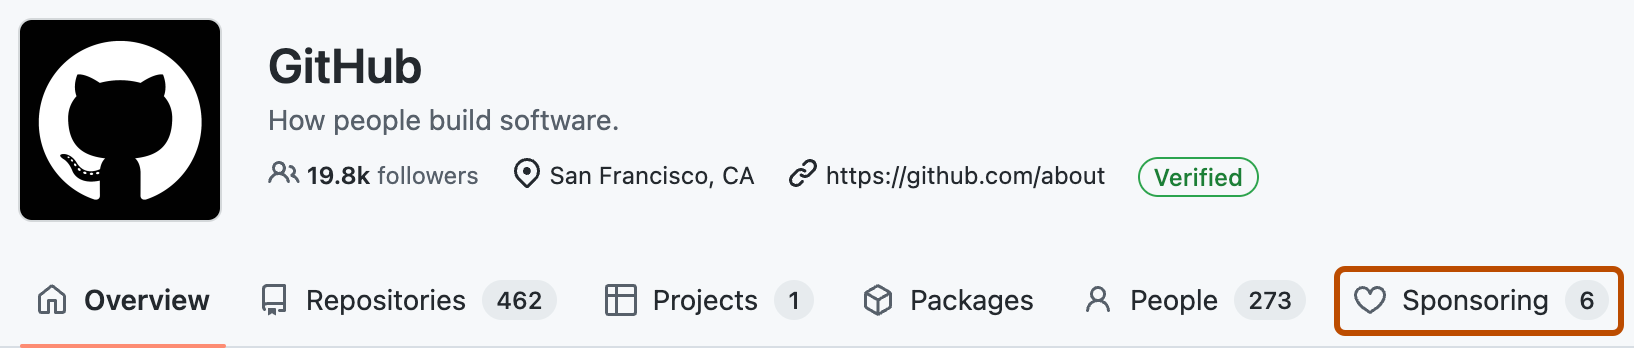 "GitHub" 組織のホーム ページのスクリーンショット。 [スポンサー] というラベルの付いたメニュー タブが、濃いオレンジ色の枠線で囲まれています。